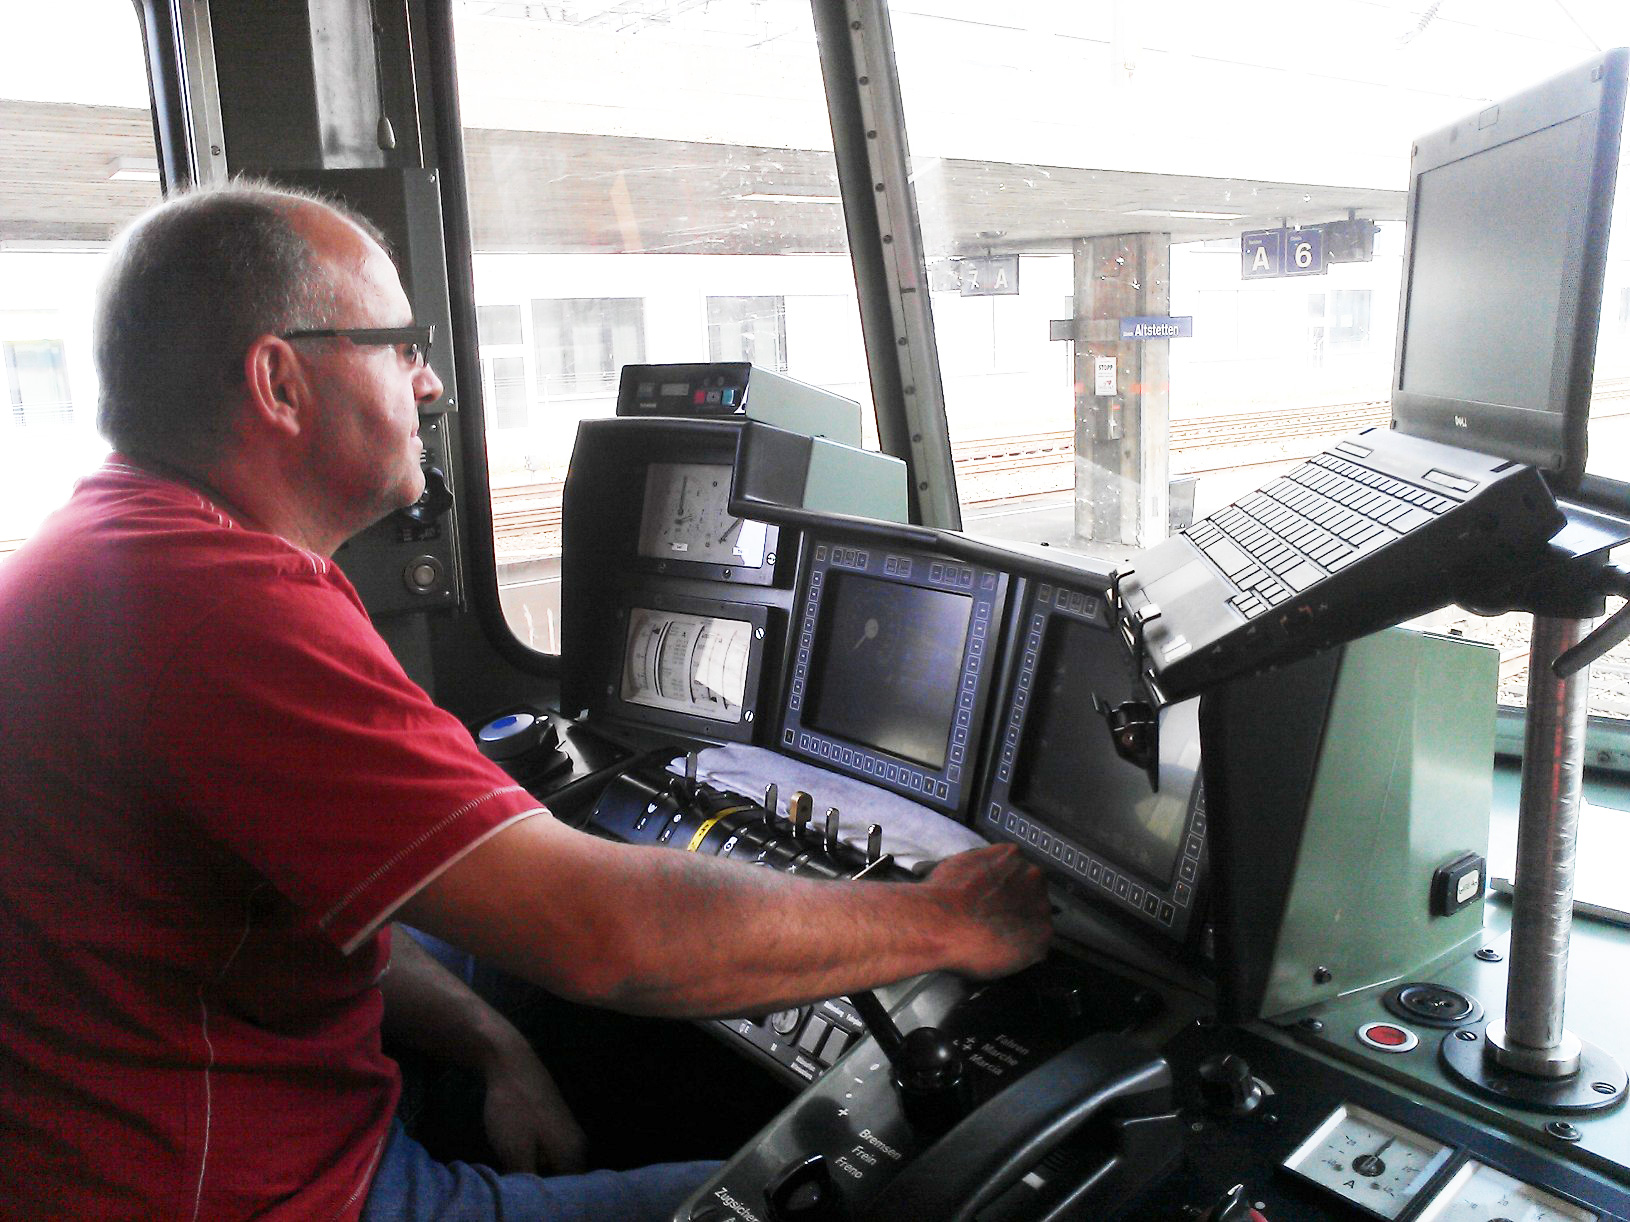 In einer neuen Serie stellen Mitarbeitende von SBB Cargo ihr Arbeitsgerät vor. Teil 1: Die elektronische Lokführerassistentin Teil 2: Die Hybridlok Eem923 Teil 3: Das Bremsgerät pdr6